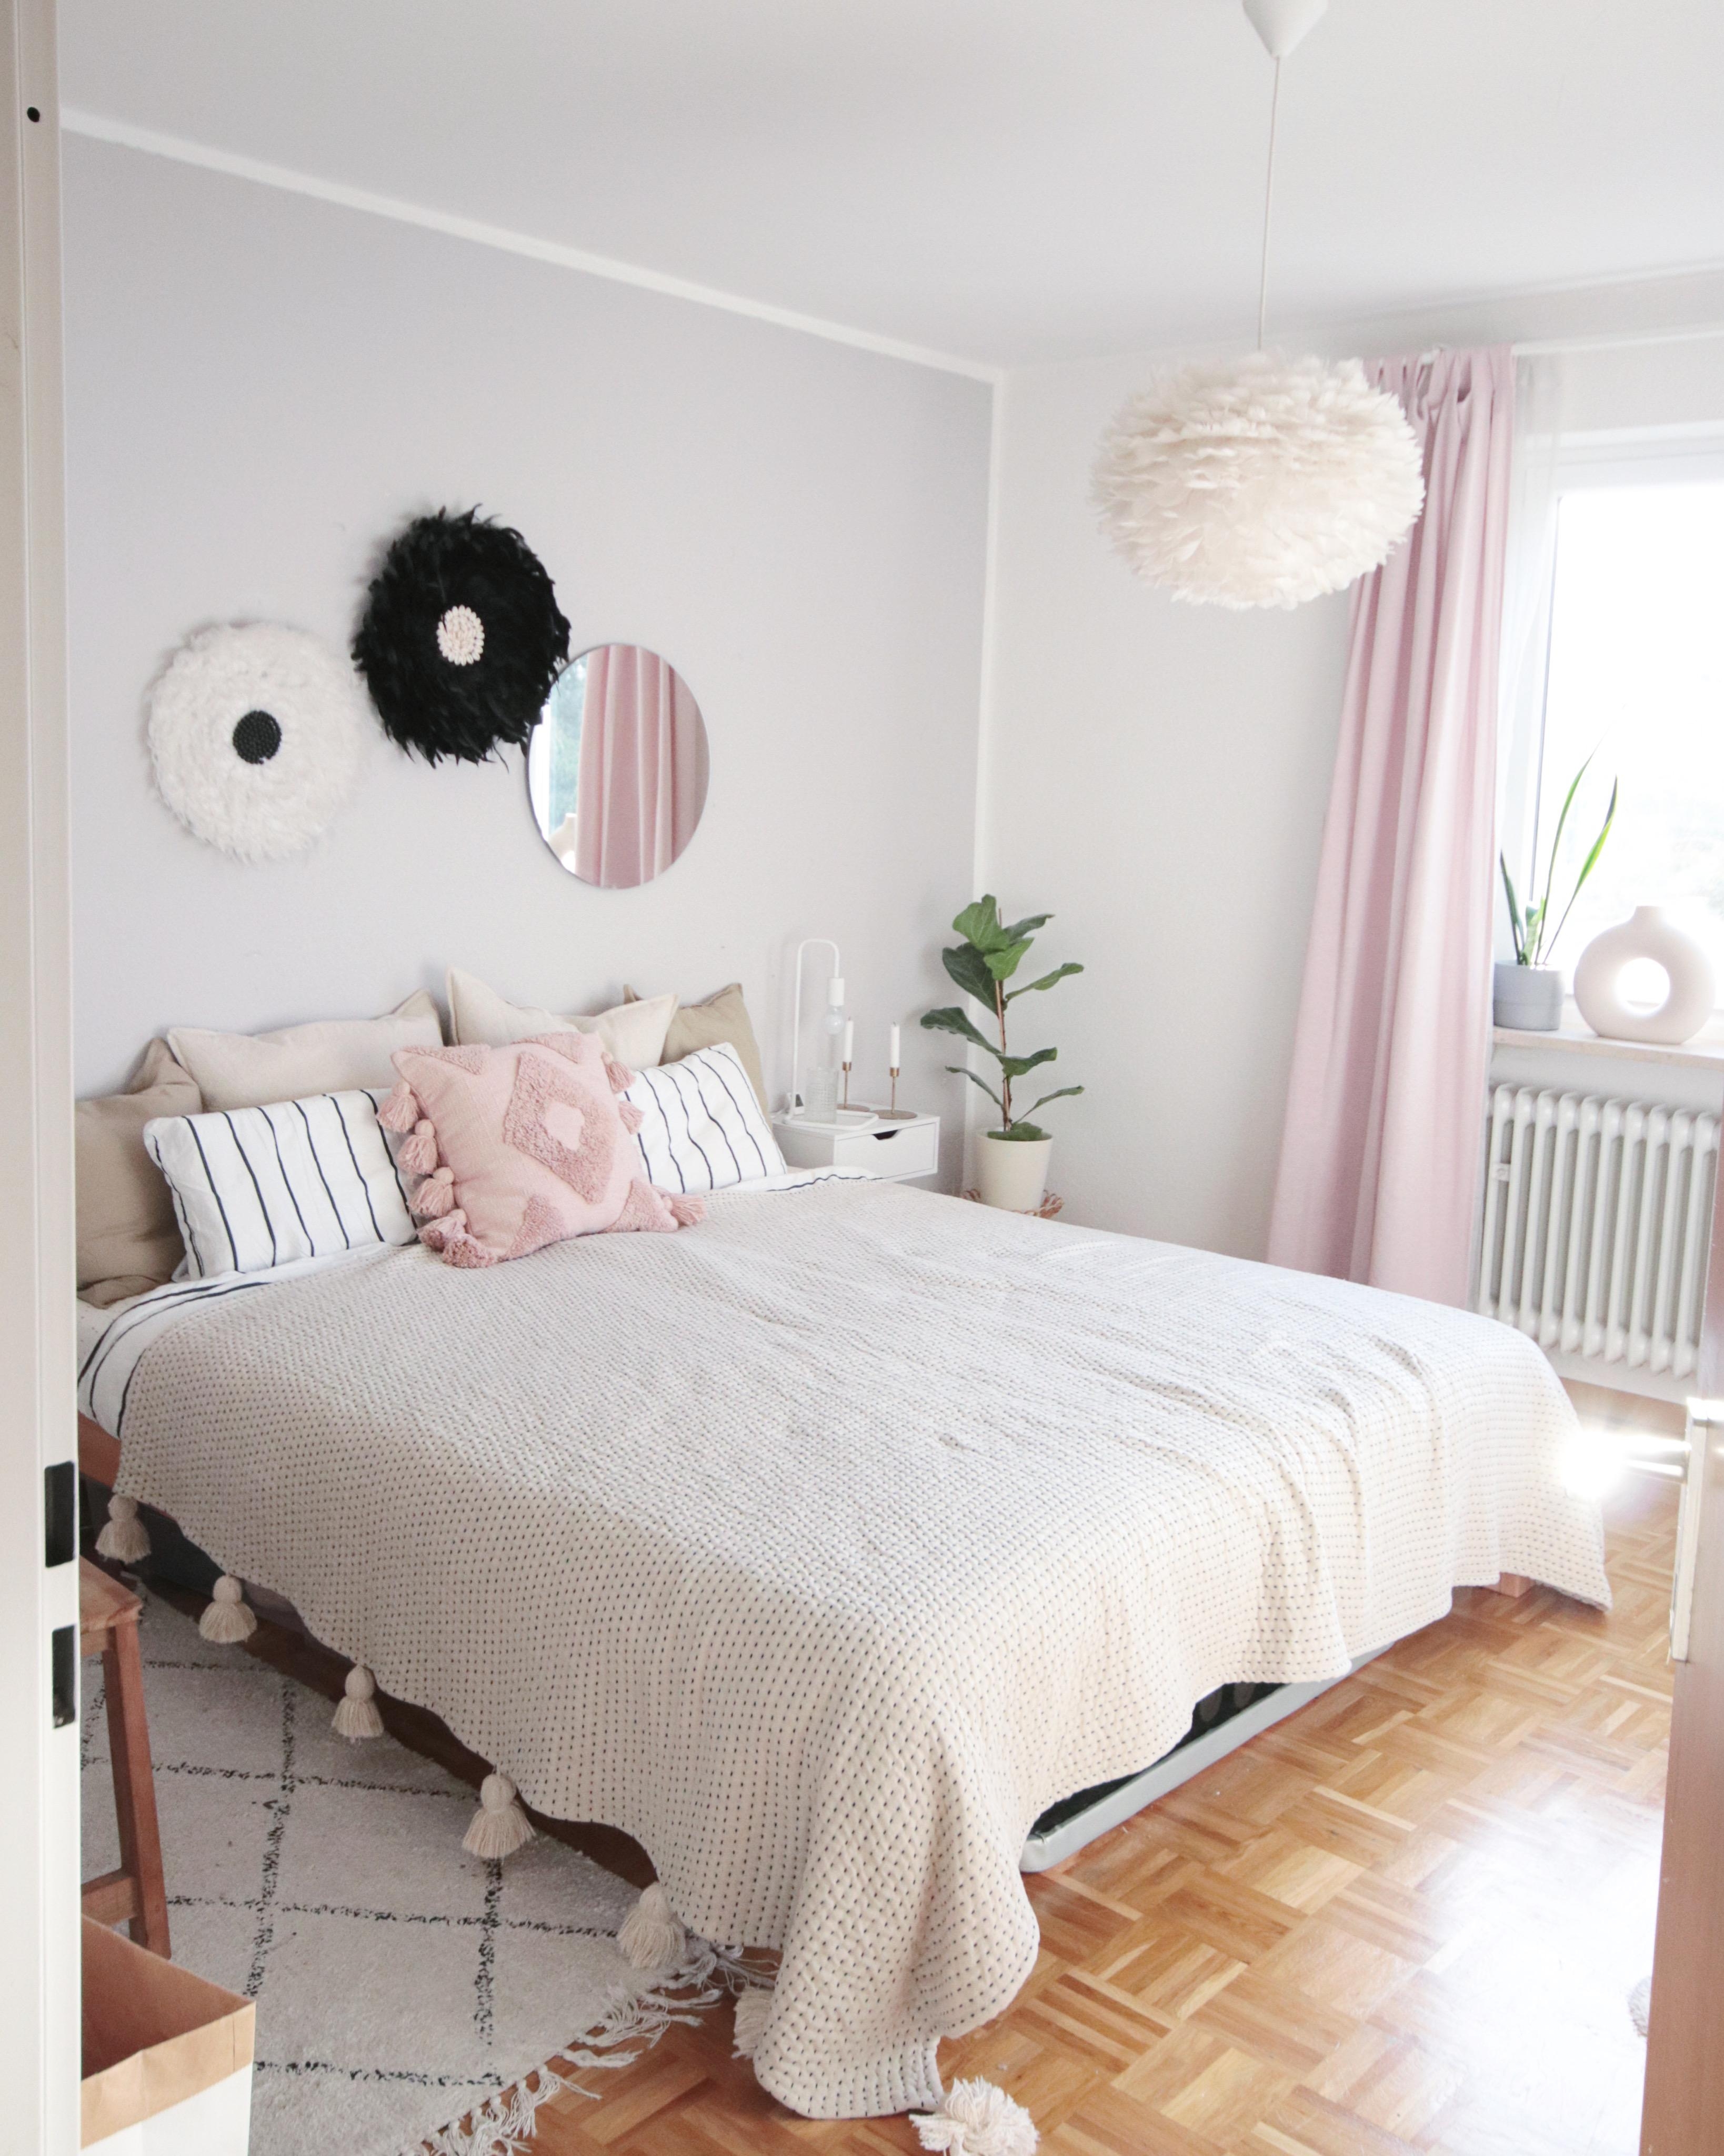 Wie ich es mag 🤍
#schlafzimmer #cozybedroom #skandi #skandischlafzimmer #rosaliebe #scandinavian #bedroomgoals